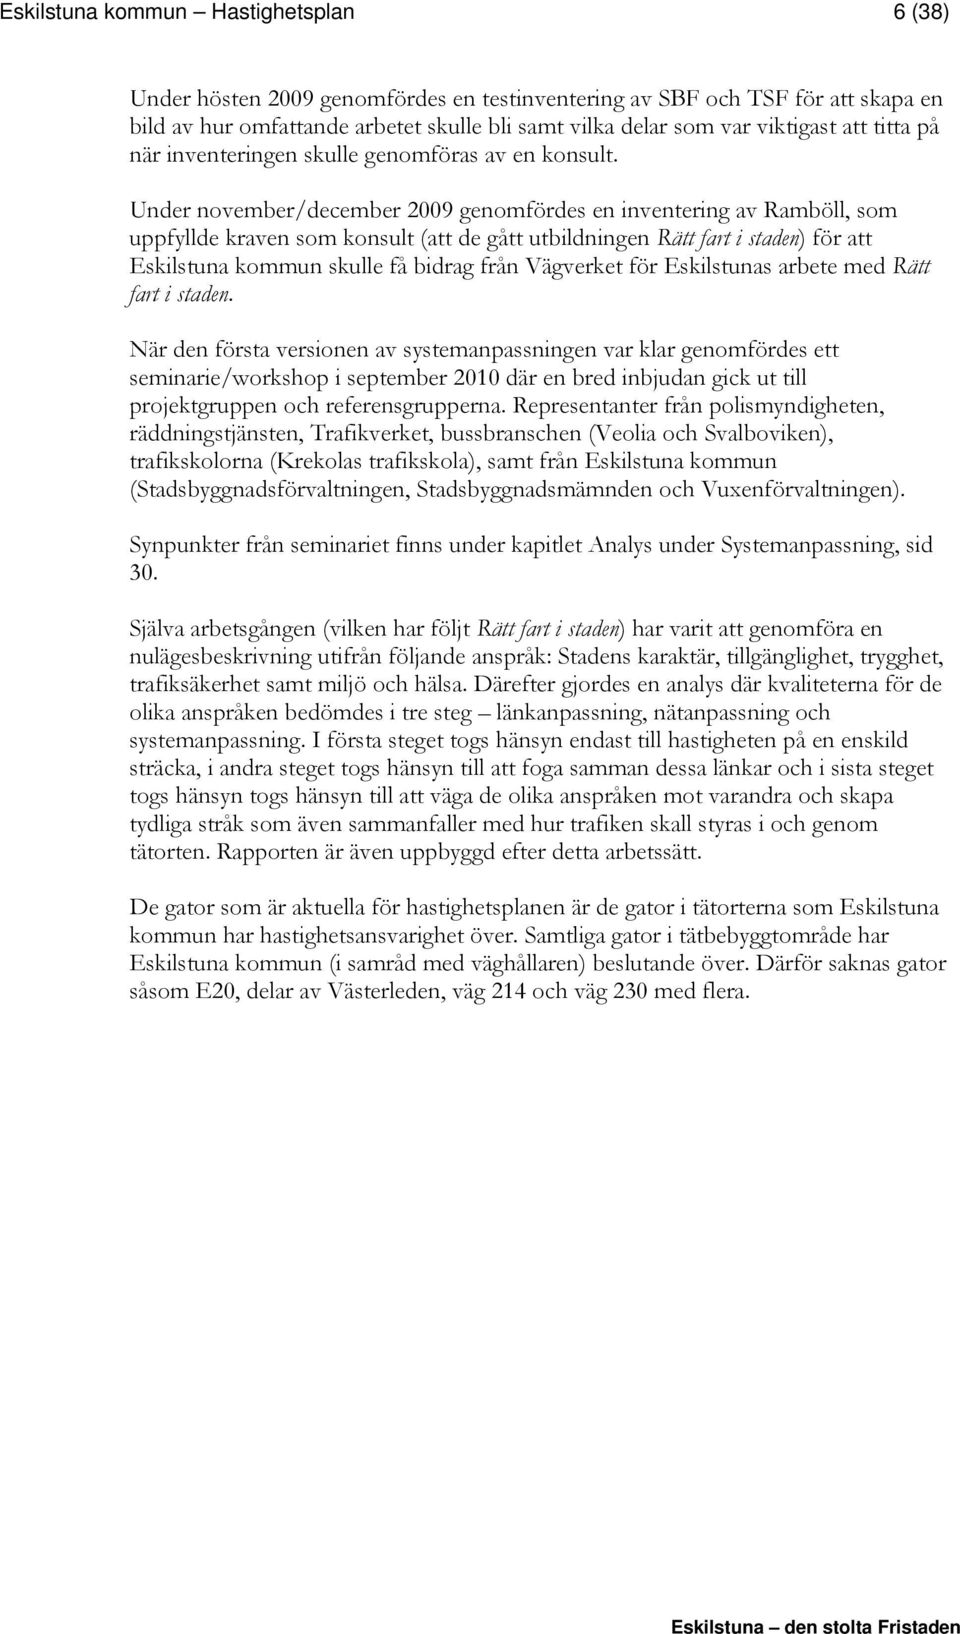 Under november/december 2009 genomfördes en inventering av Ramböll, som uppfyllde kraven som konsult (att de gått utbildningen Rätt fart i staden) för att Eskilstuna kommun skulle få bidrag från